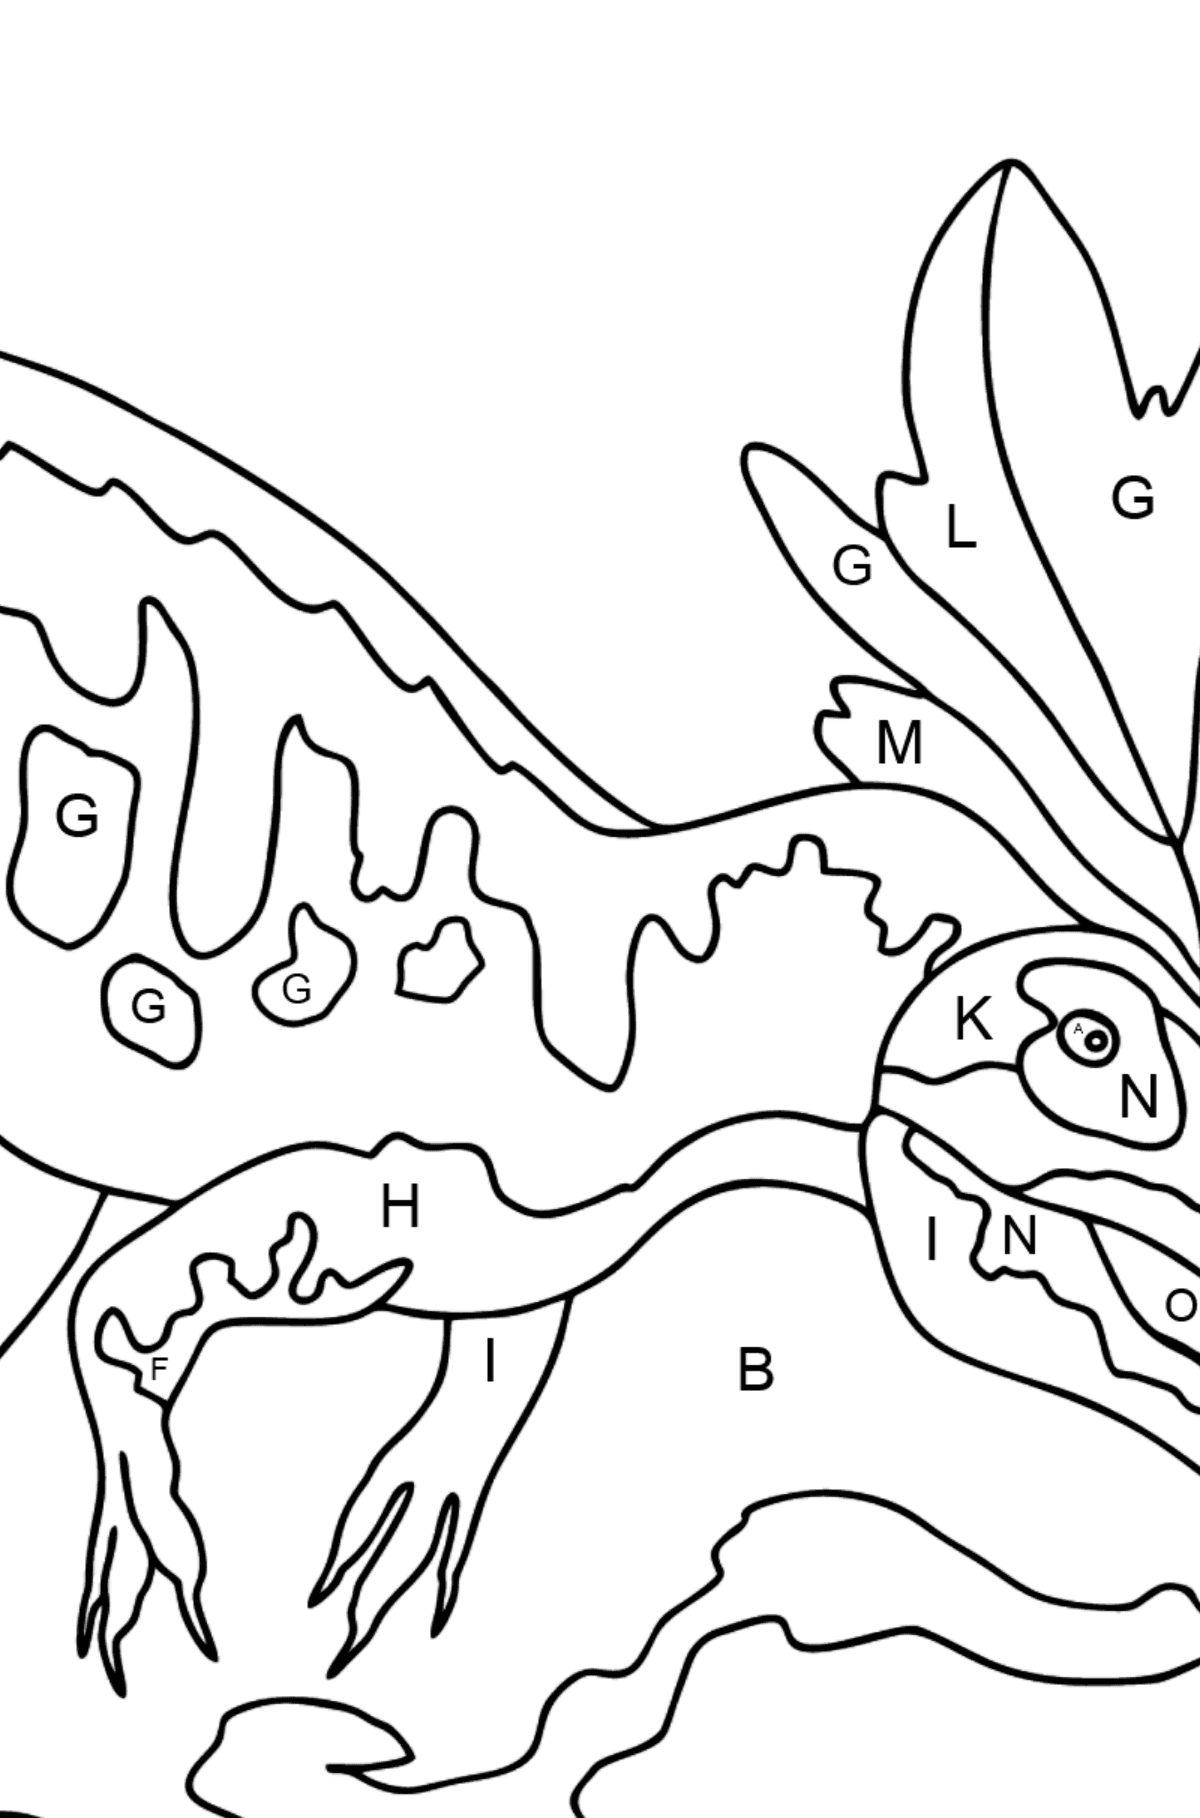 Dibujo para colorear de alosaurio (difícil) - Colorear por Letras para Niños